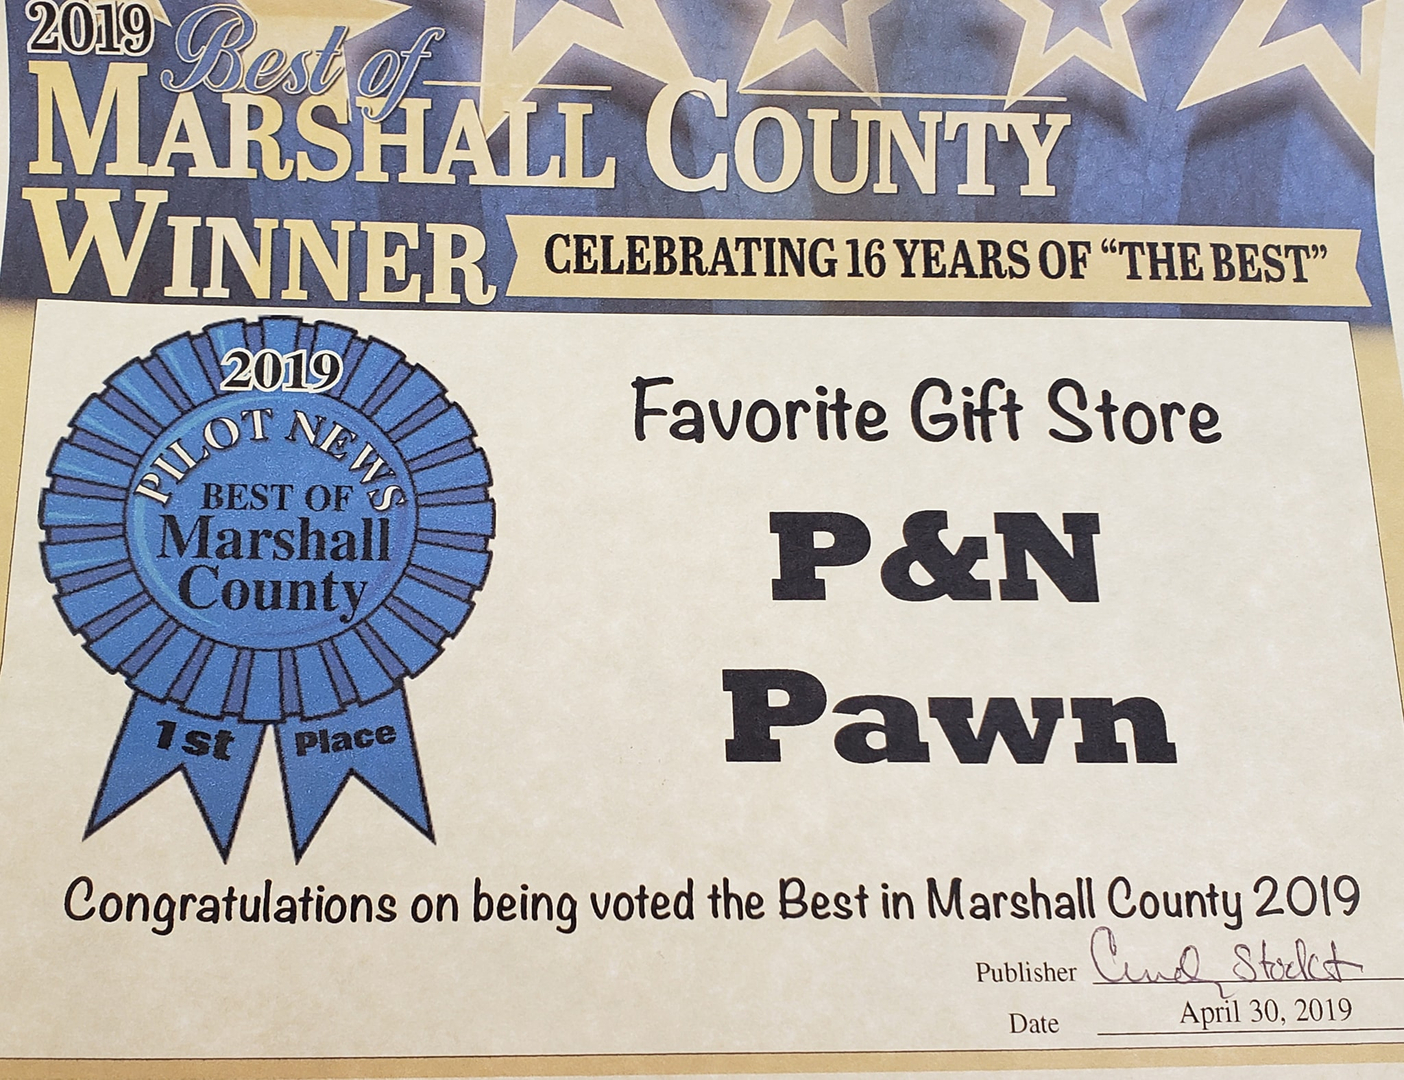 PN Pawn Shop